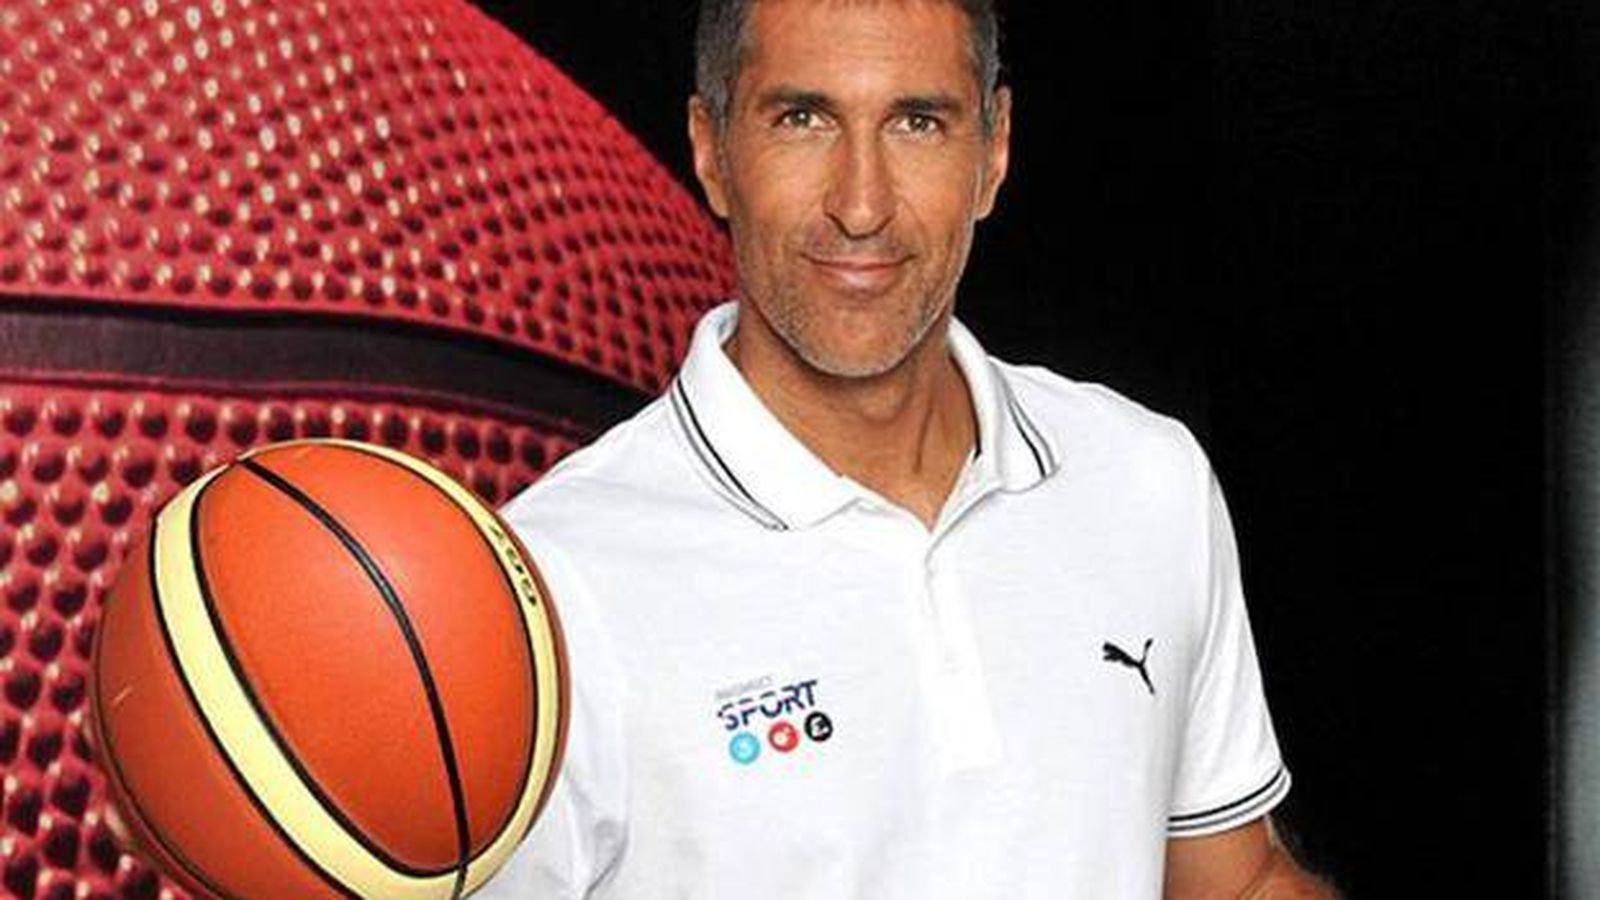 Foto: José Manuel Antúnez, exjugador de baloncesto. (Mediaset)